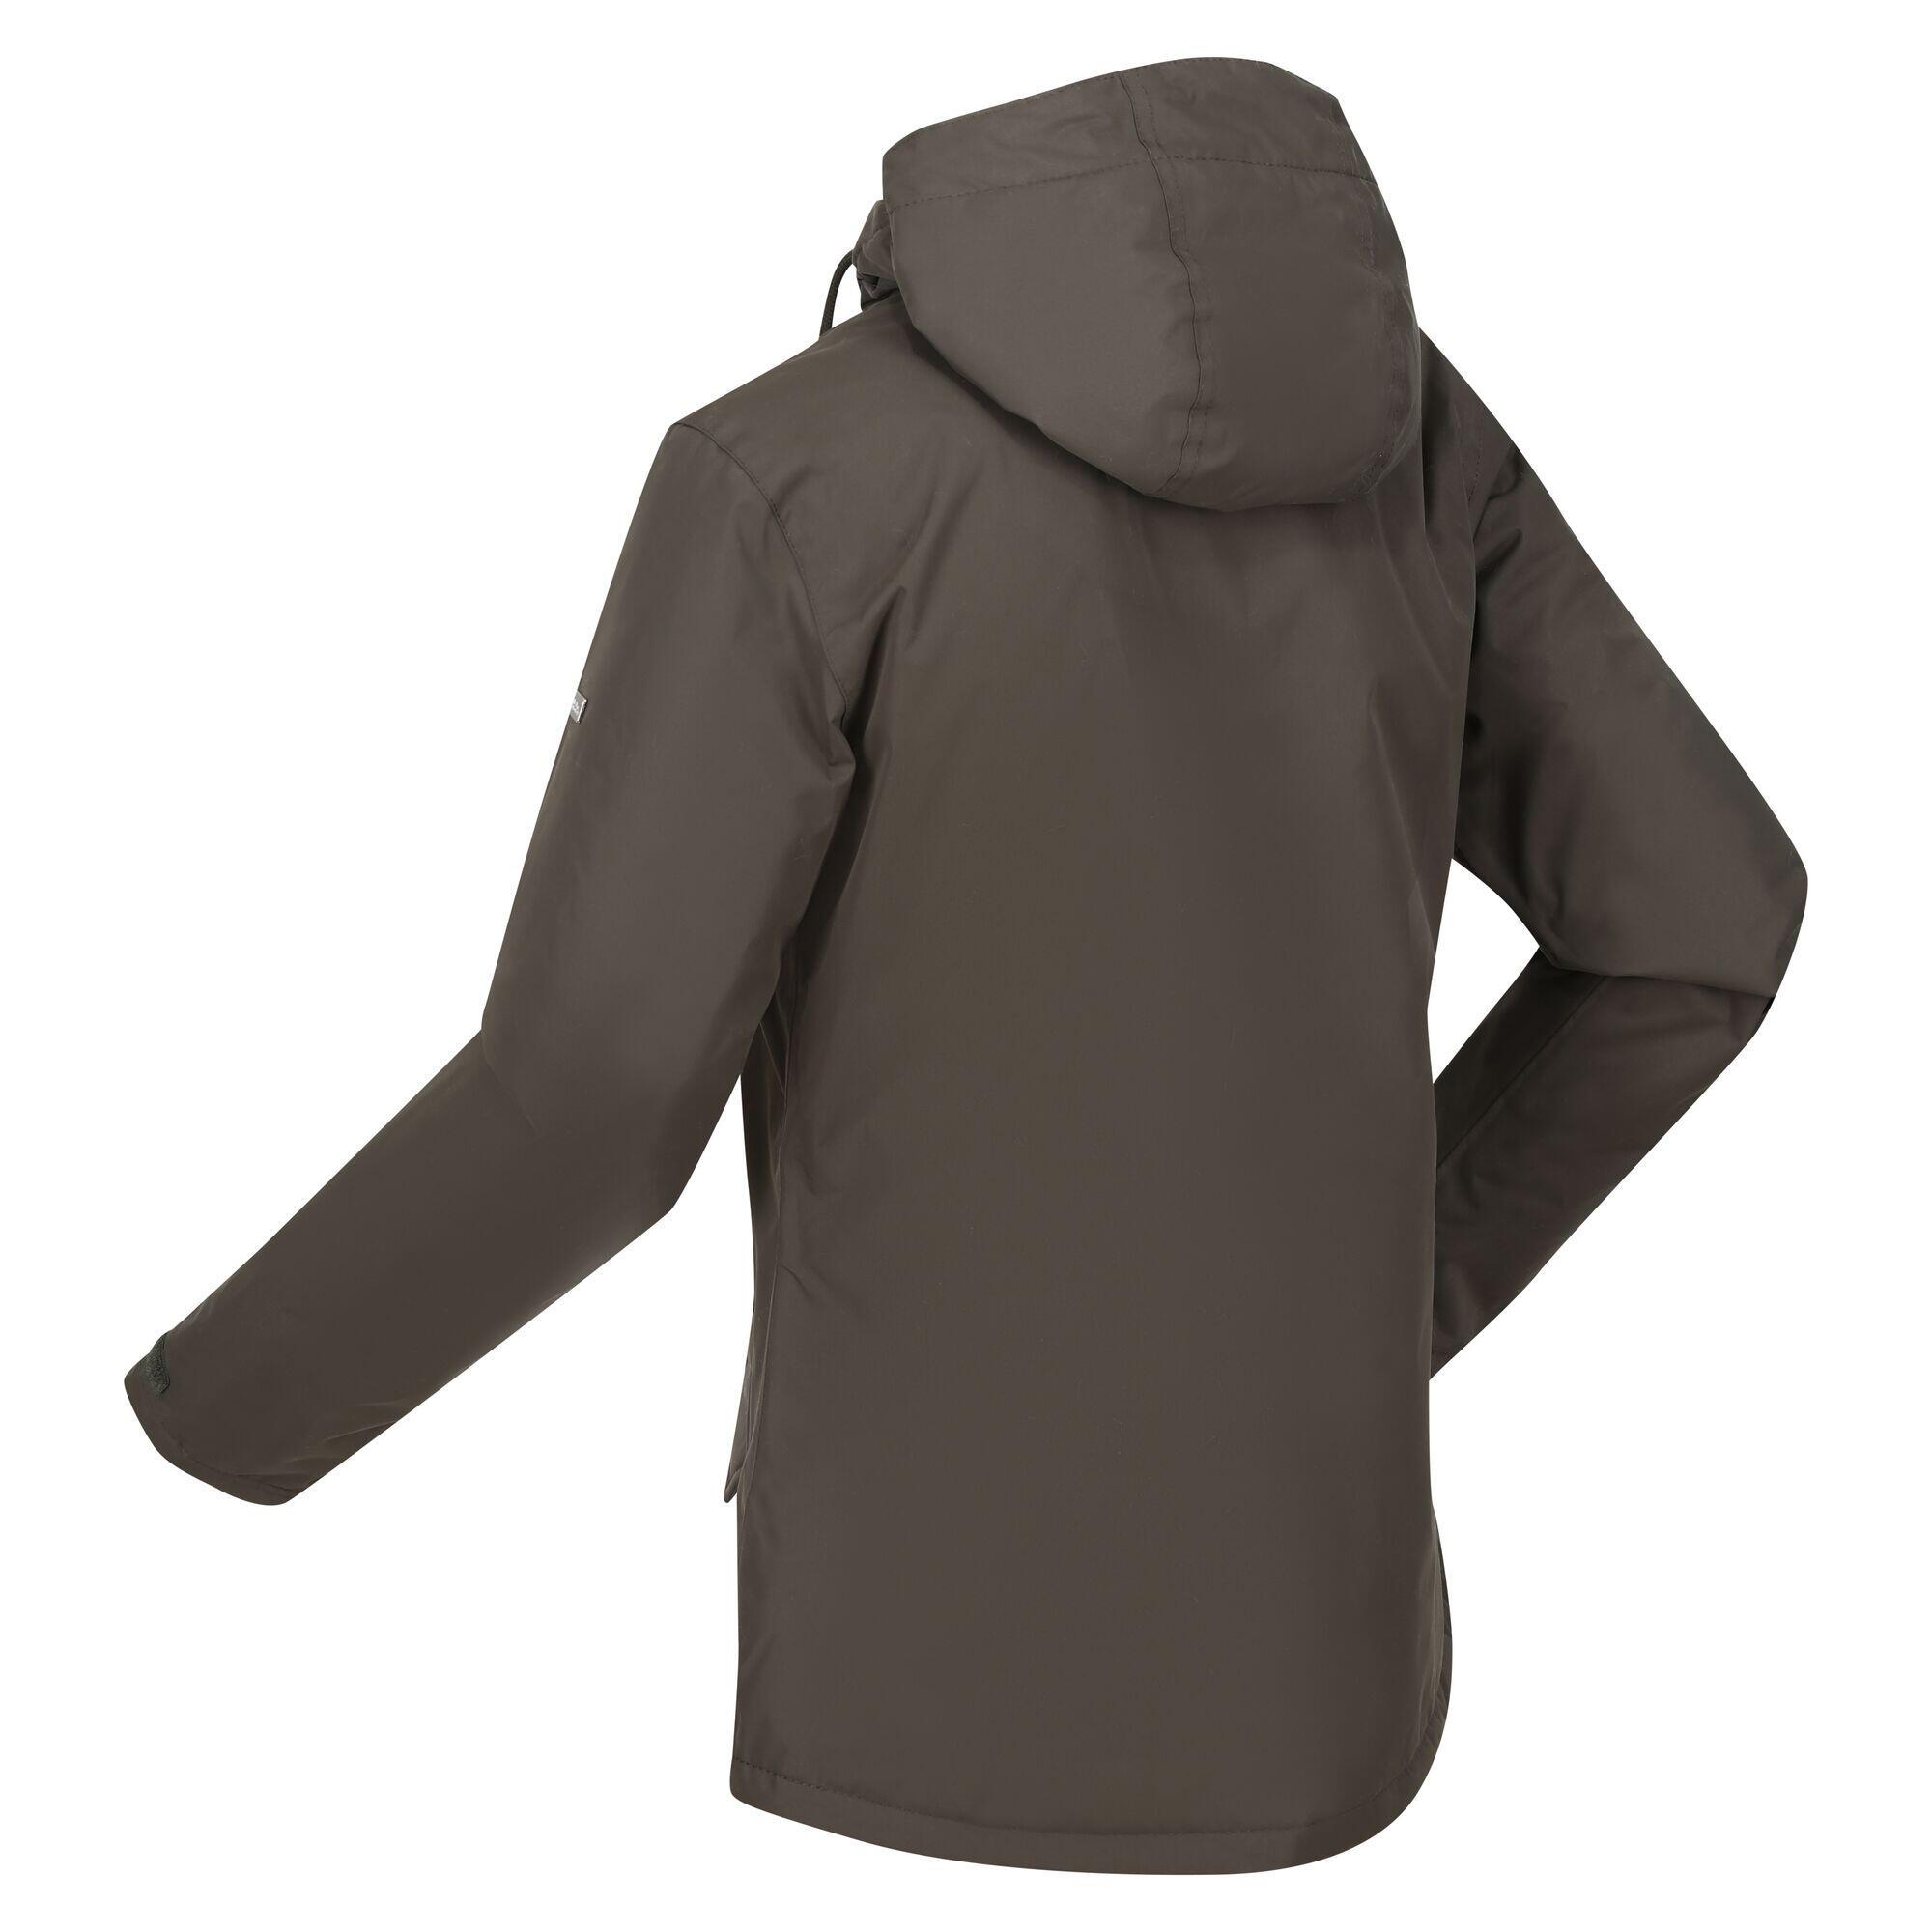 Womens/Ladies Bria Faux Fur Lined Waterproof Jacket (Dark Khaki) 4/5